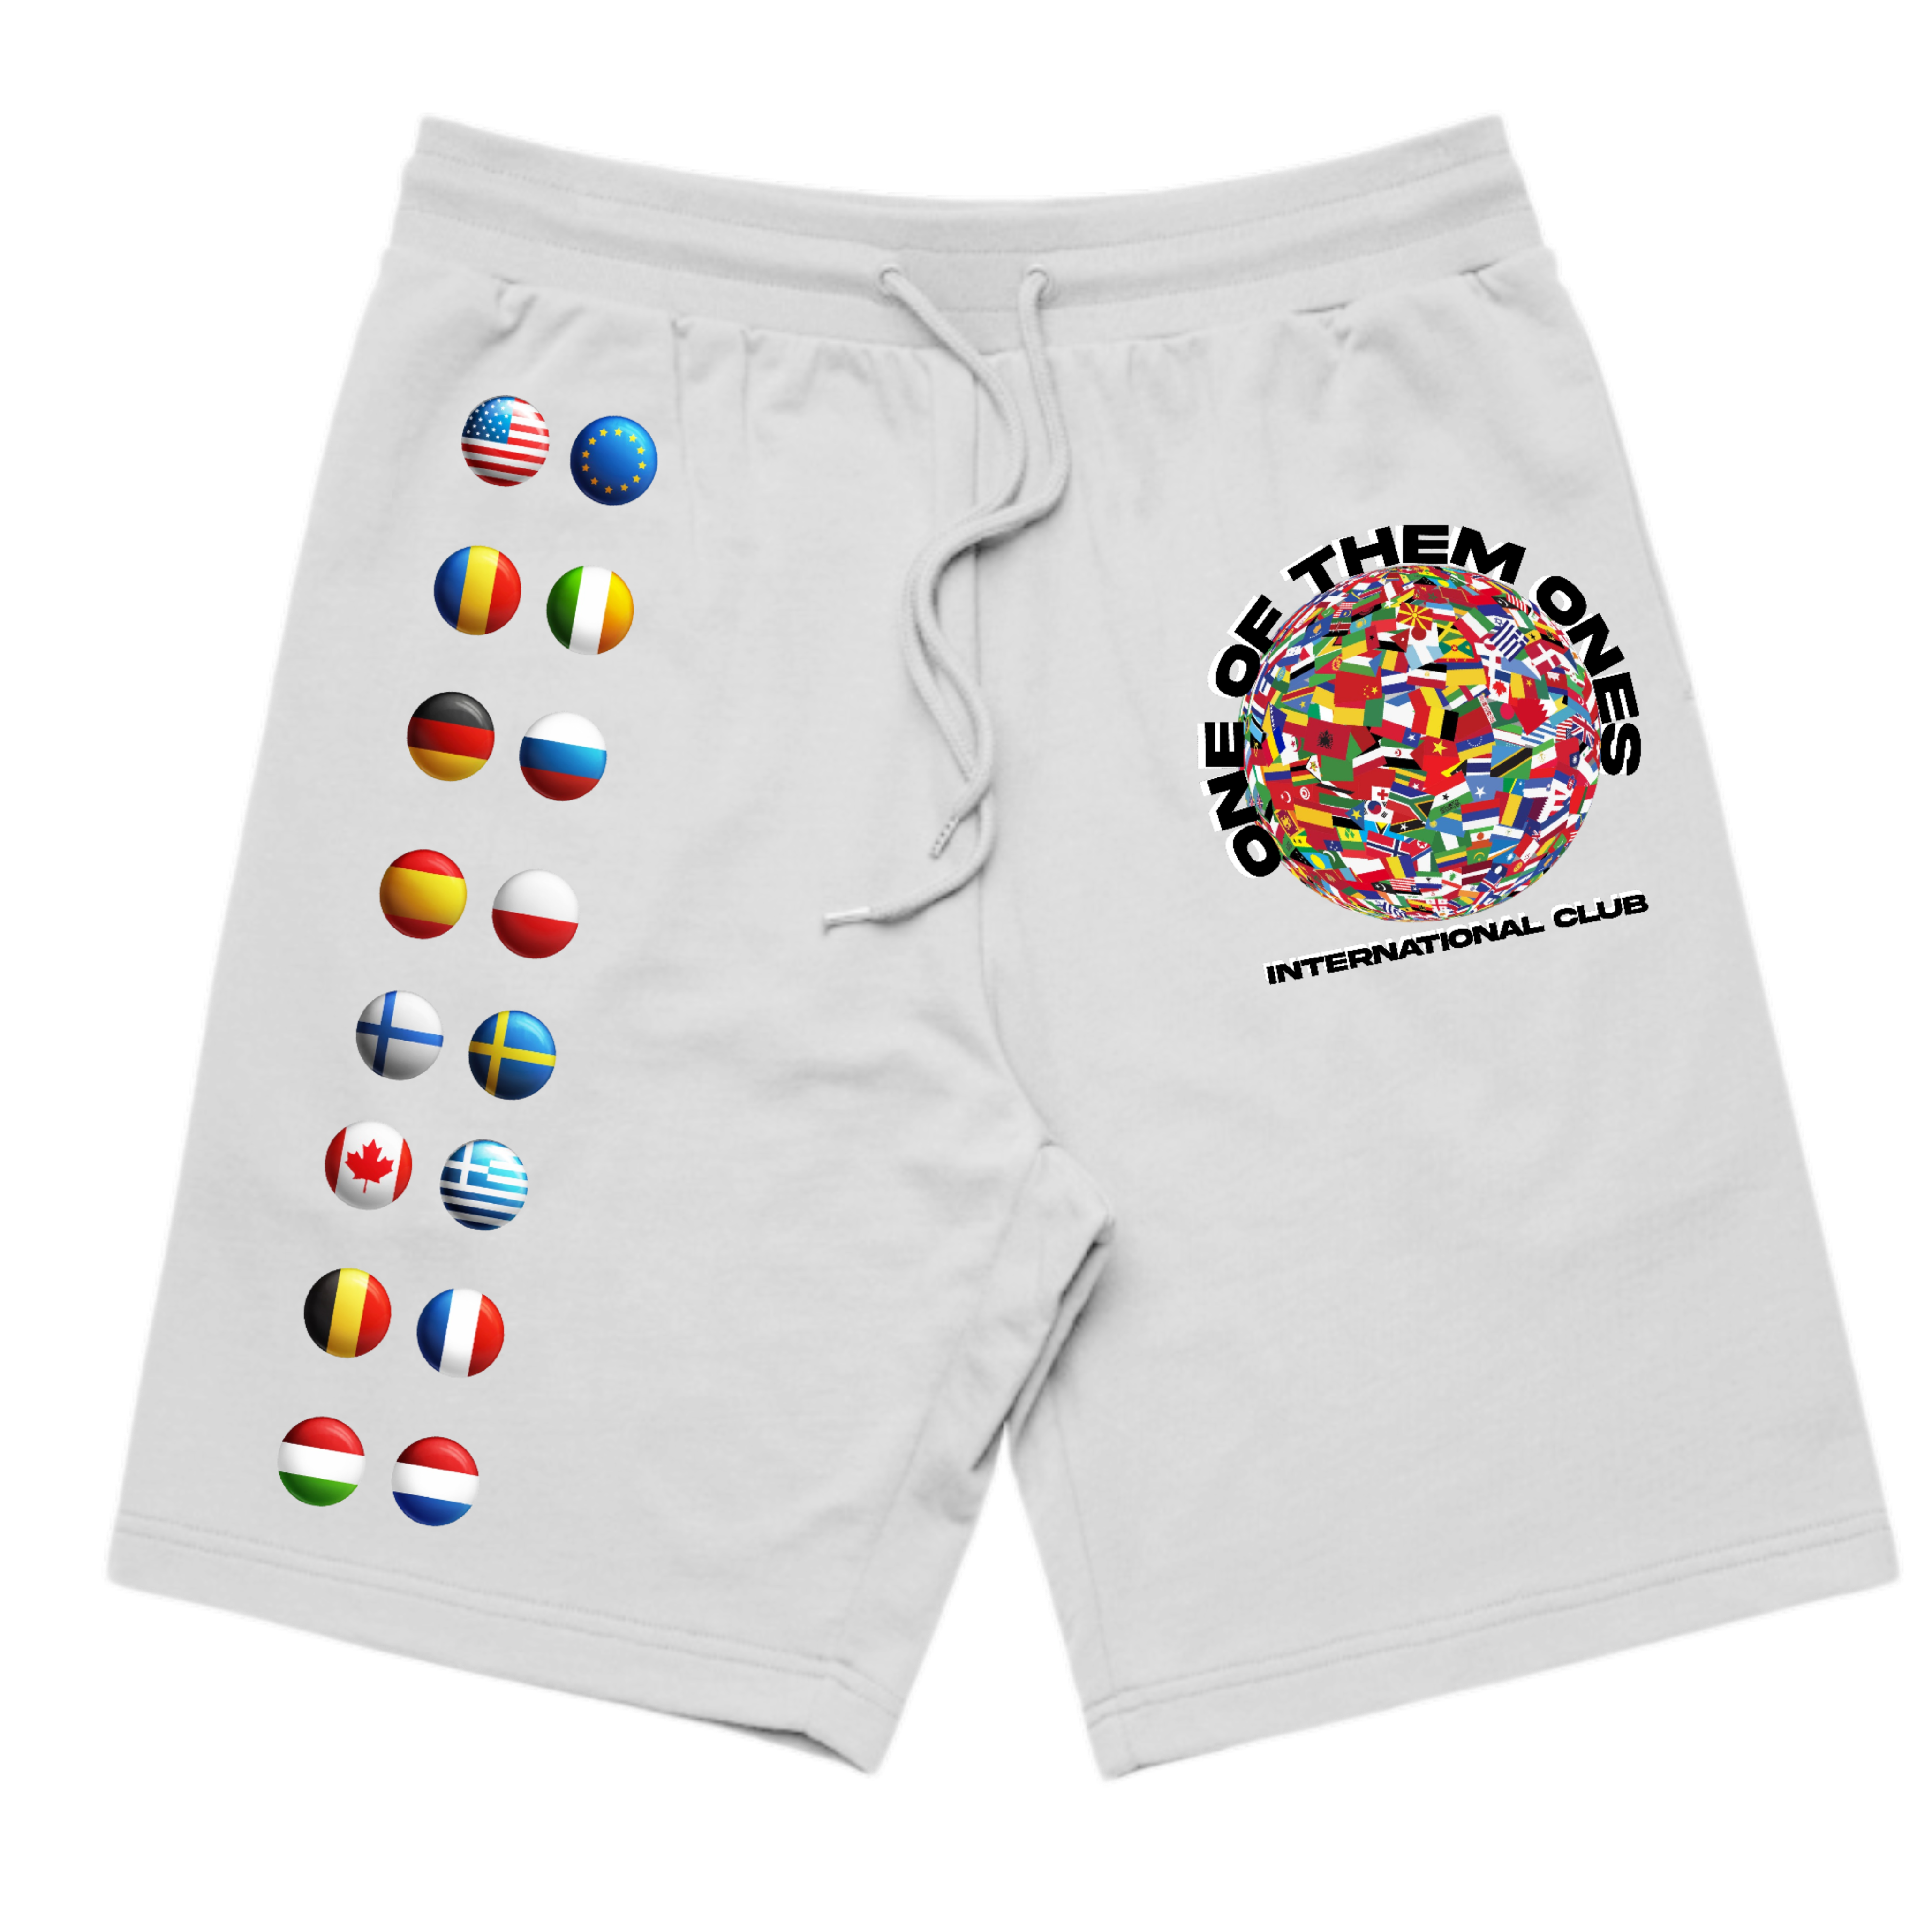 Organik Lyfestyle - 1OFTHEM1's International Club - White Shorts